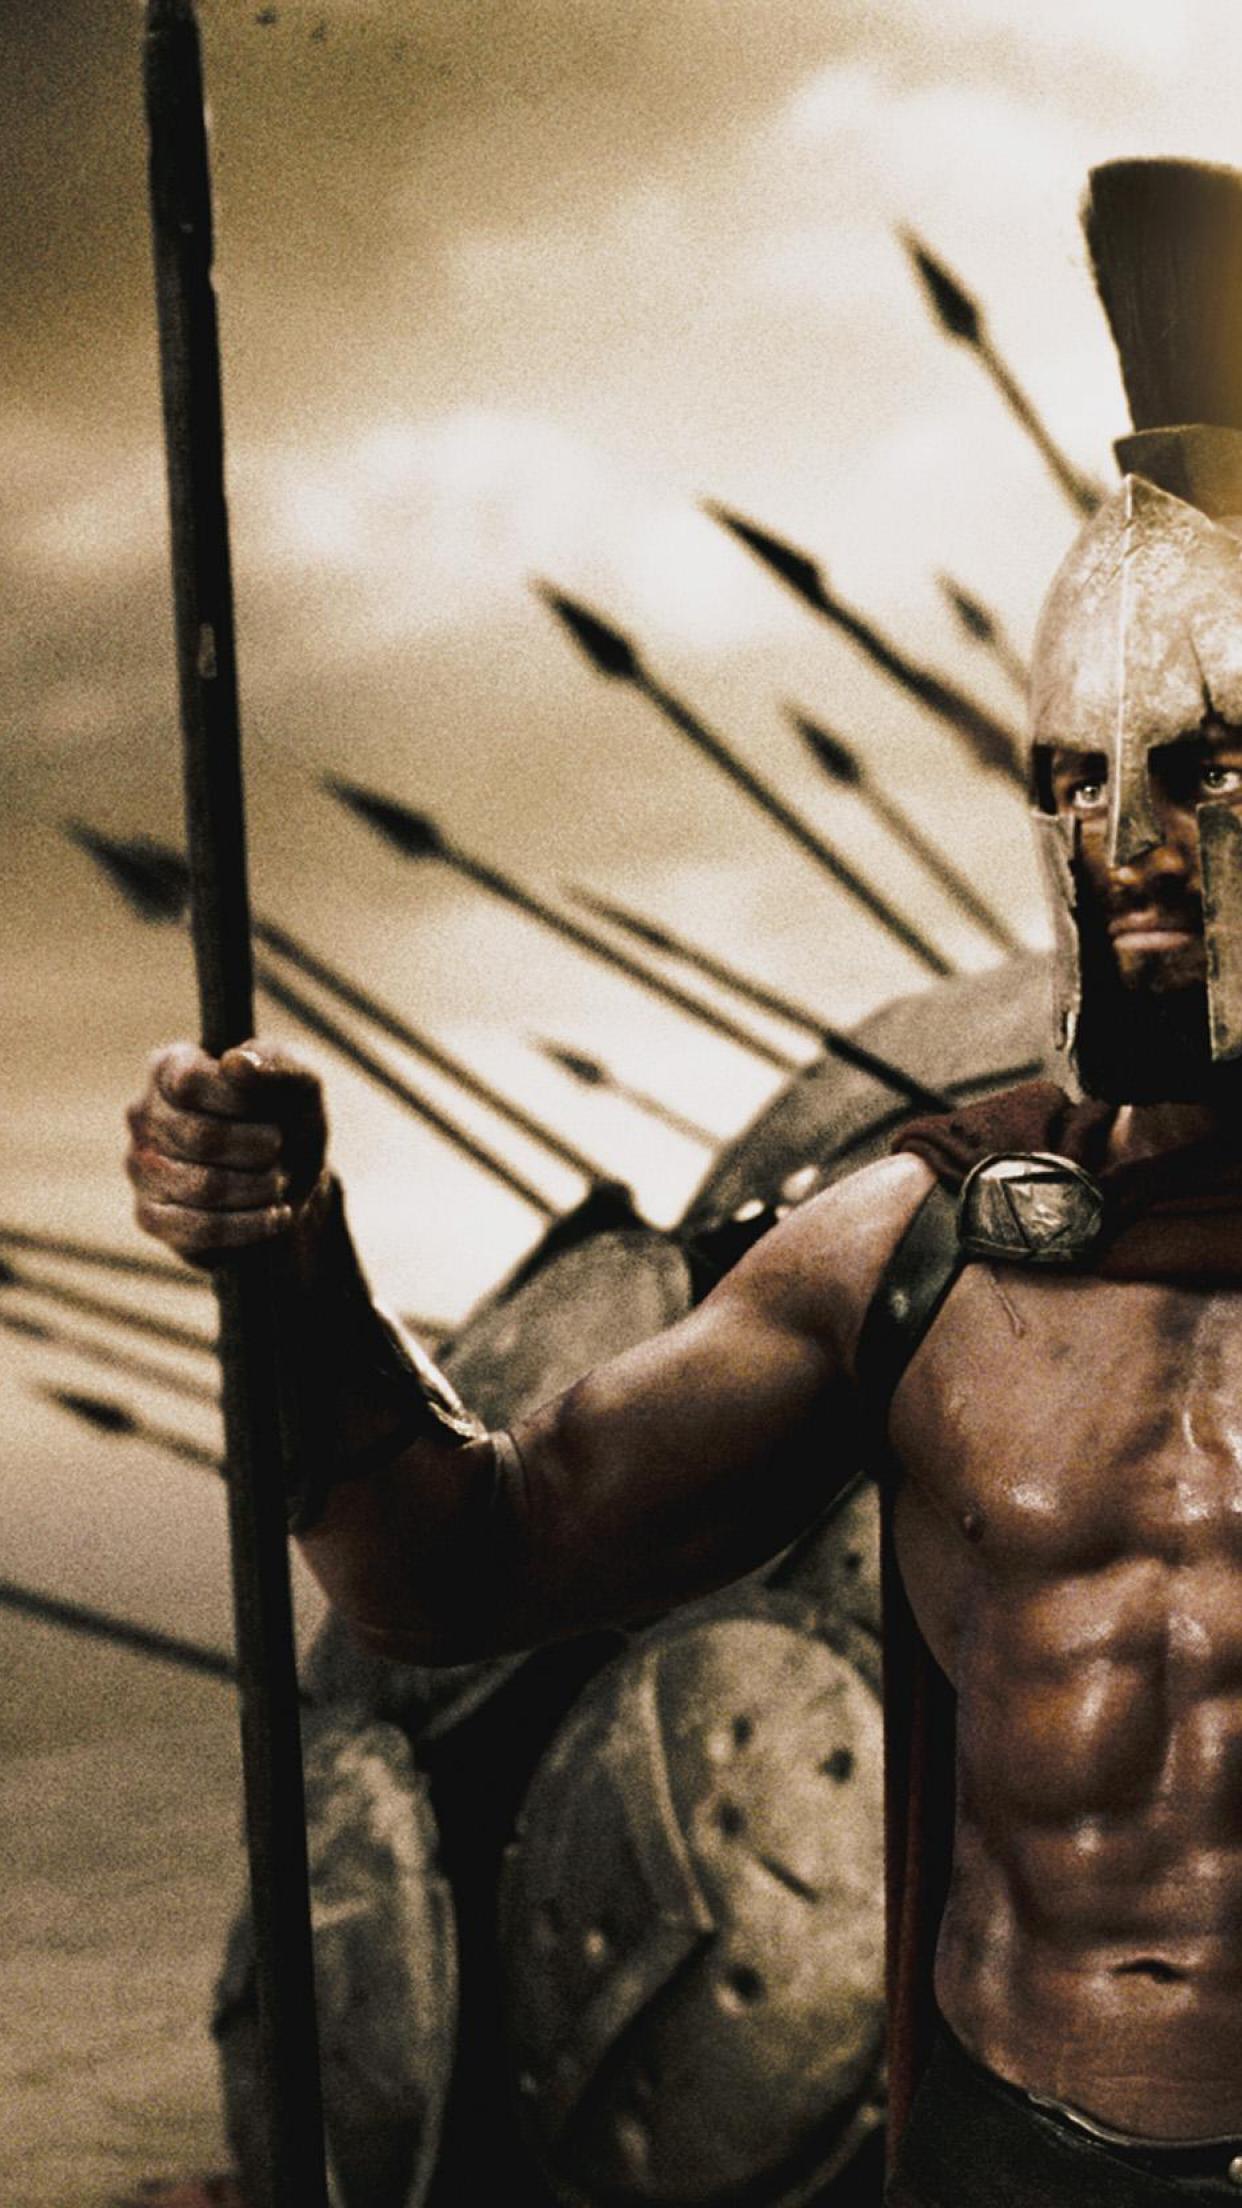 Với Free download Gerard butler Sparta Helm Warrior Spartan King Spear, bạn sẽ được trải nghiệm một sản phẩm đầy sức mạnh và nghệ thuật. Giữ lấy một chút sức mạnh của Gerard Butler trong vai Leonidas, bạn sẽ trở thành một chiến binh Spartacus không thể chối bỏ. Một cách tuyệt vời để thể hiện sự yêu thích của bạn với bộ phim